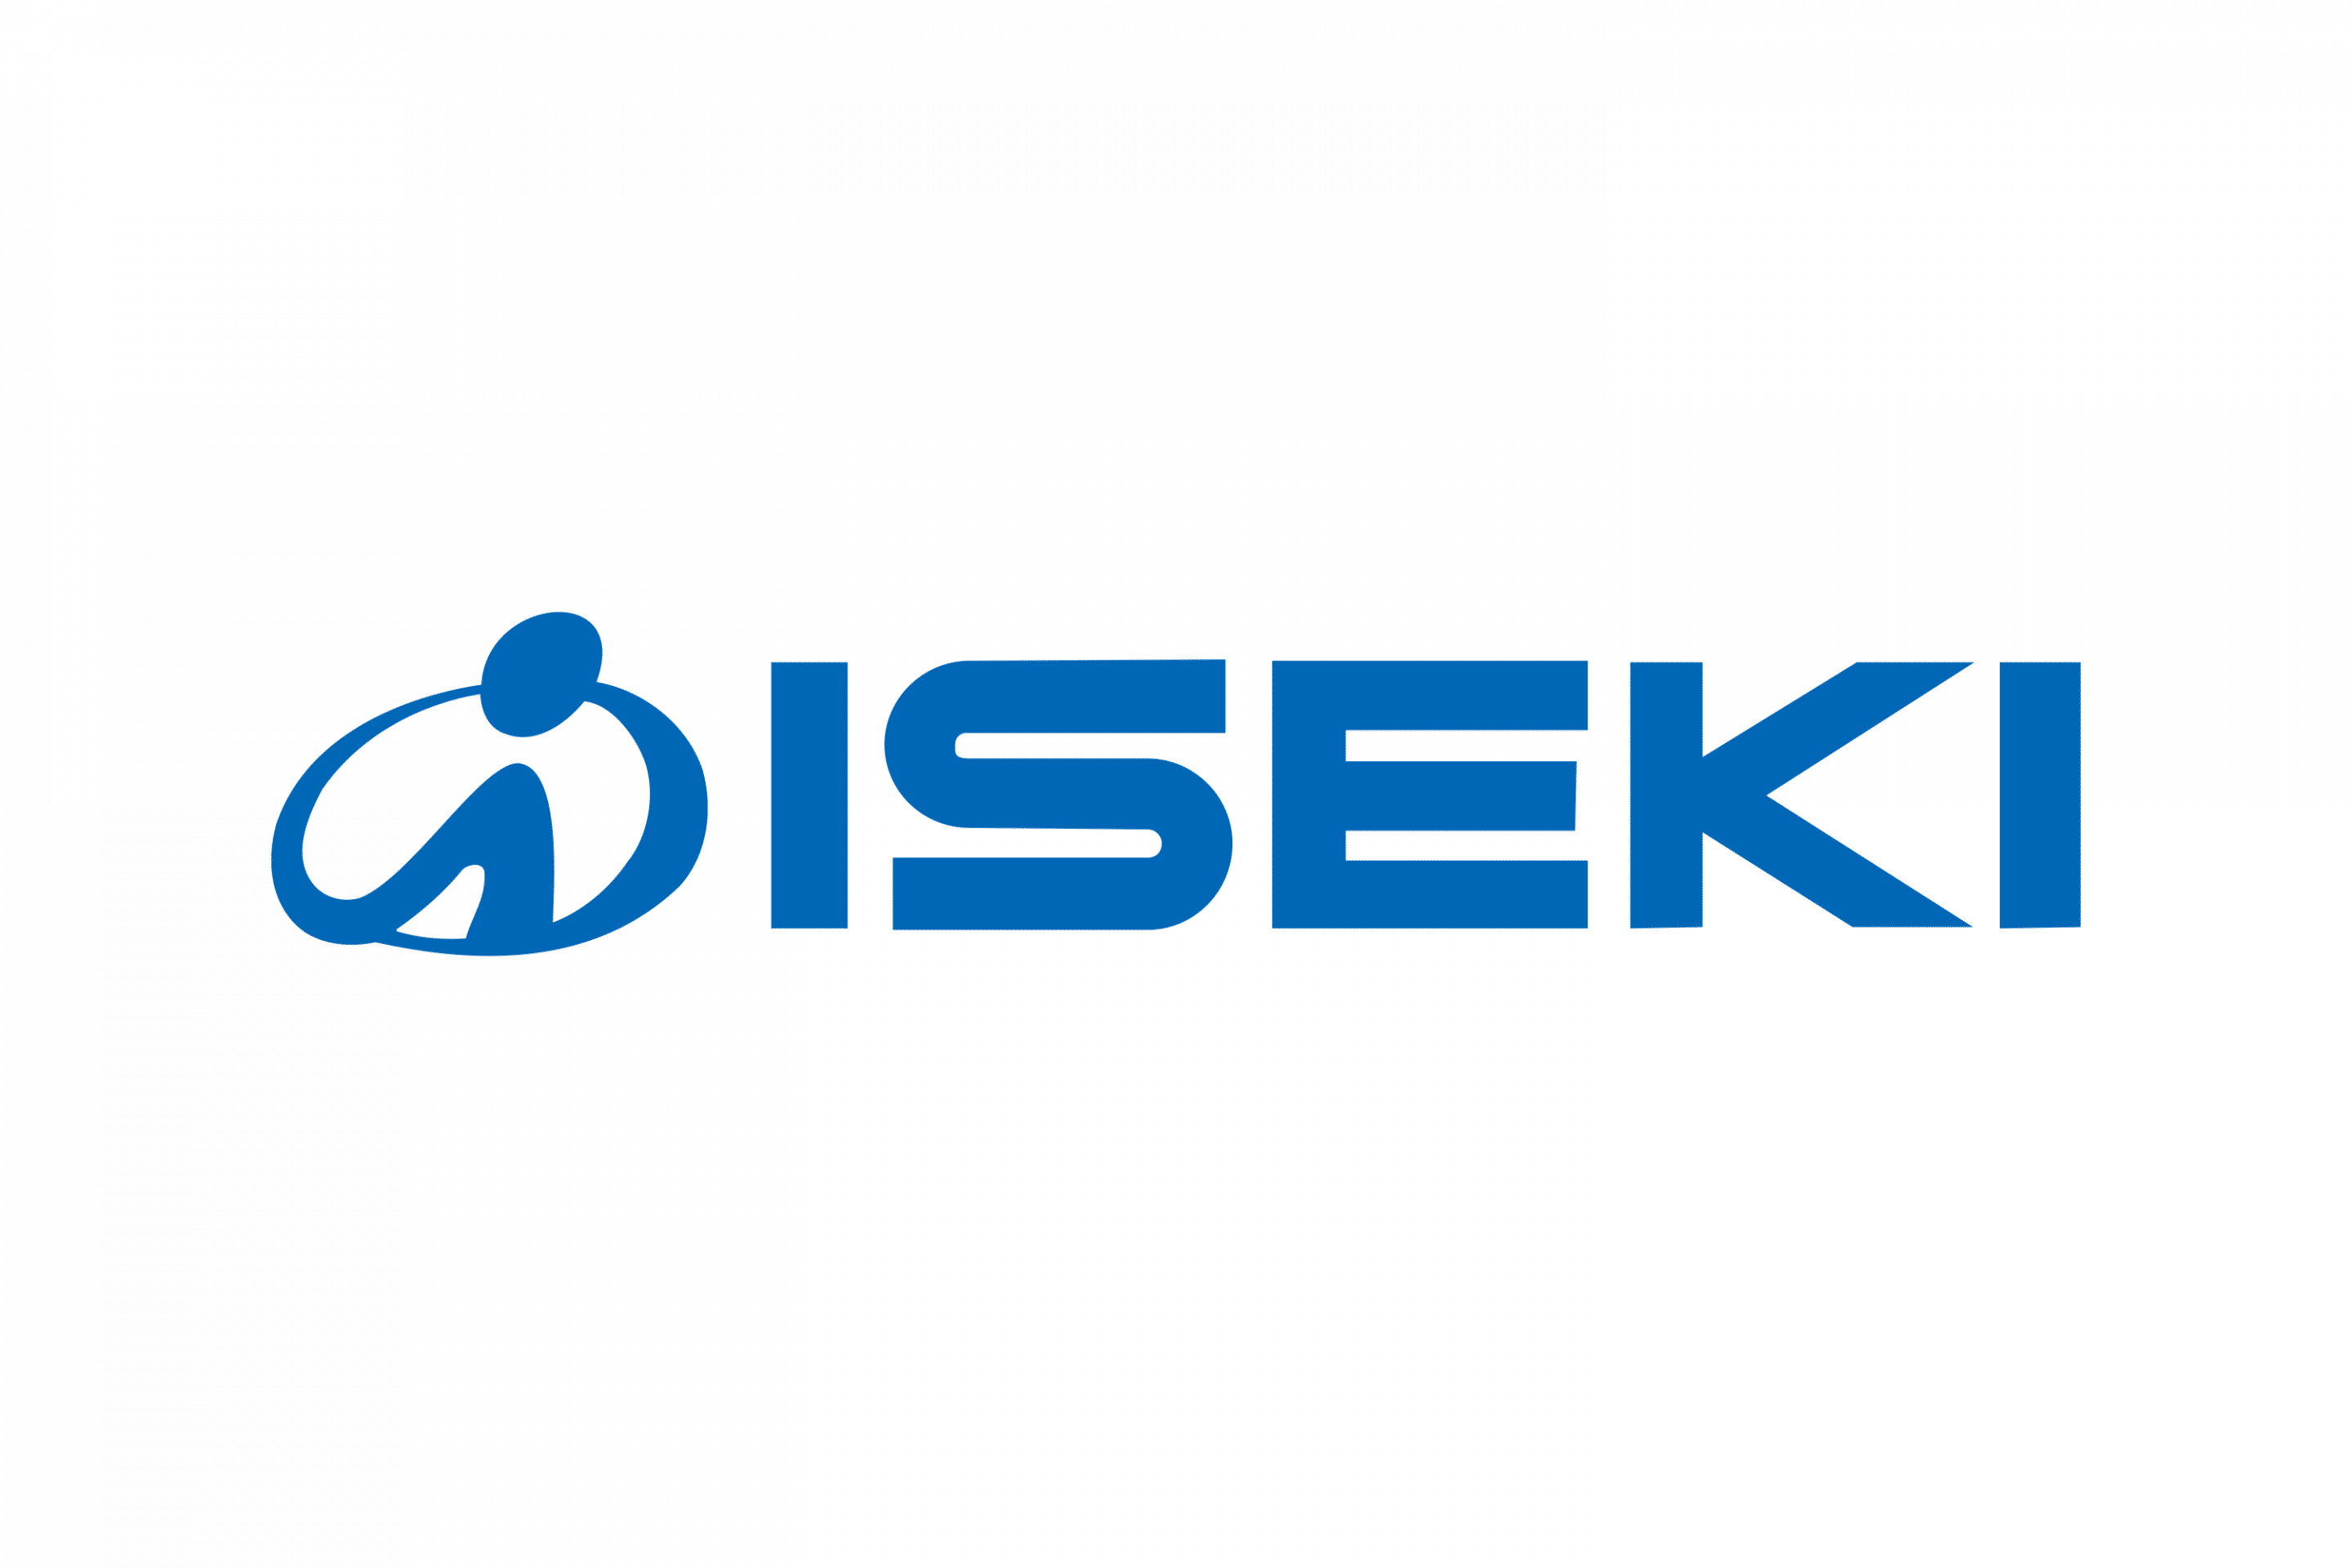 Iseki-Logo.wine